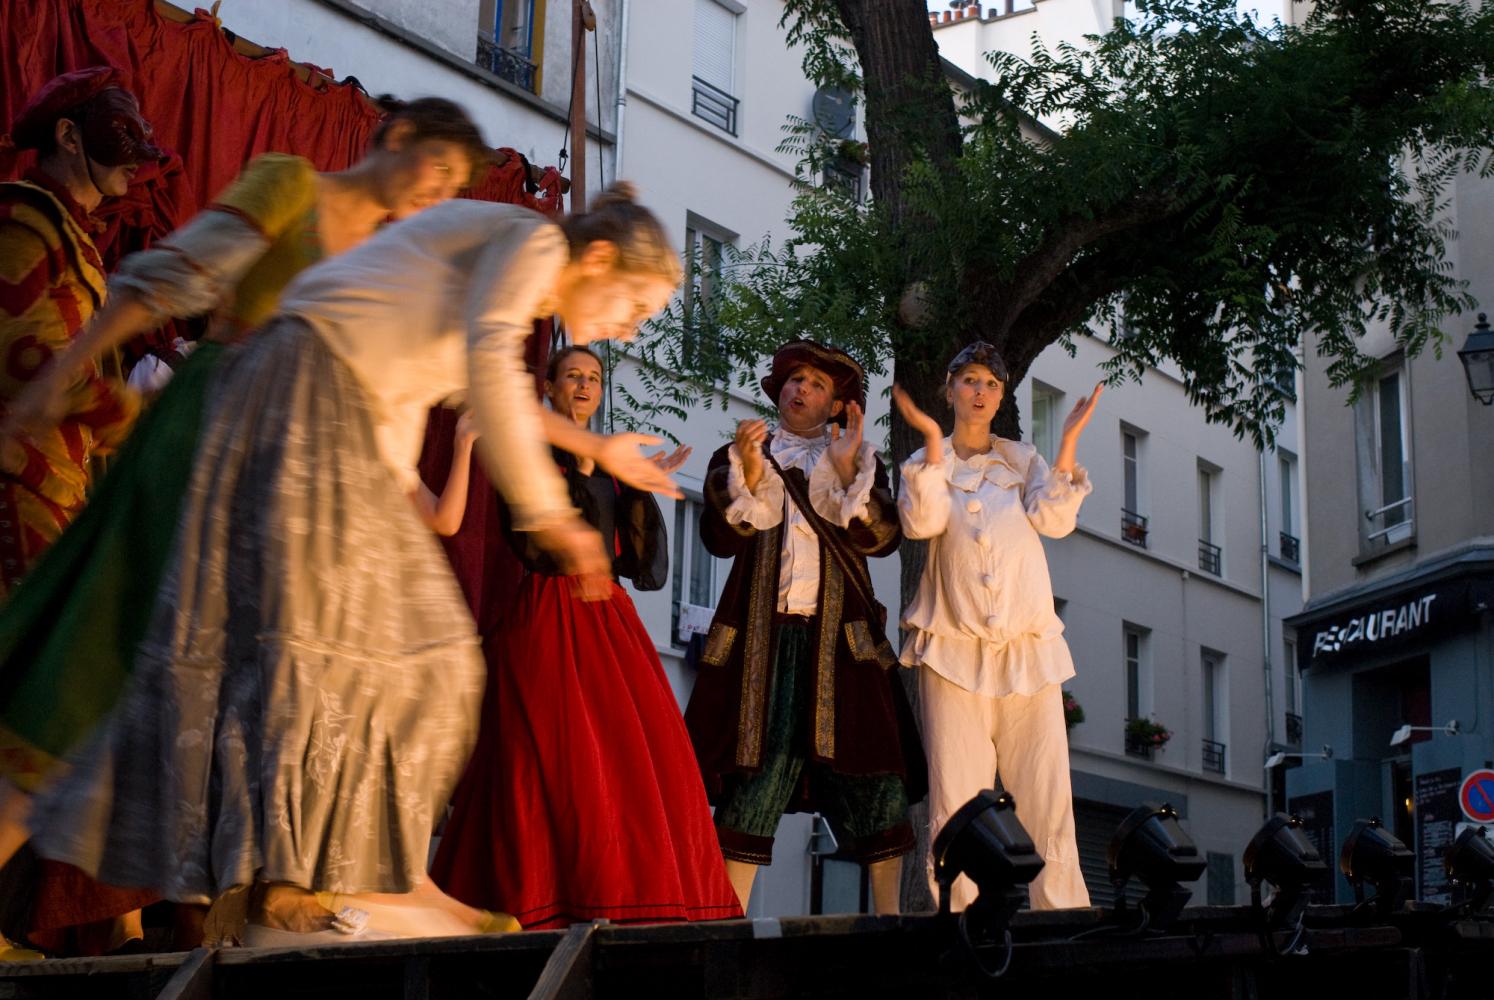 Fin du spectacle, les comédiens alignés sur scène saluent à tour de rôle pendant que leurs collègues les applaudissent. Paris, août 2010.